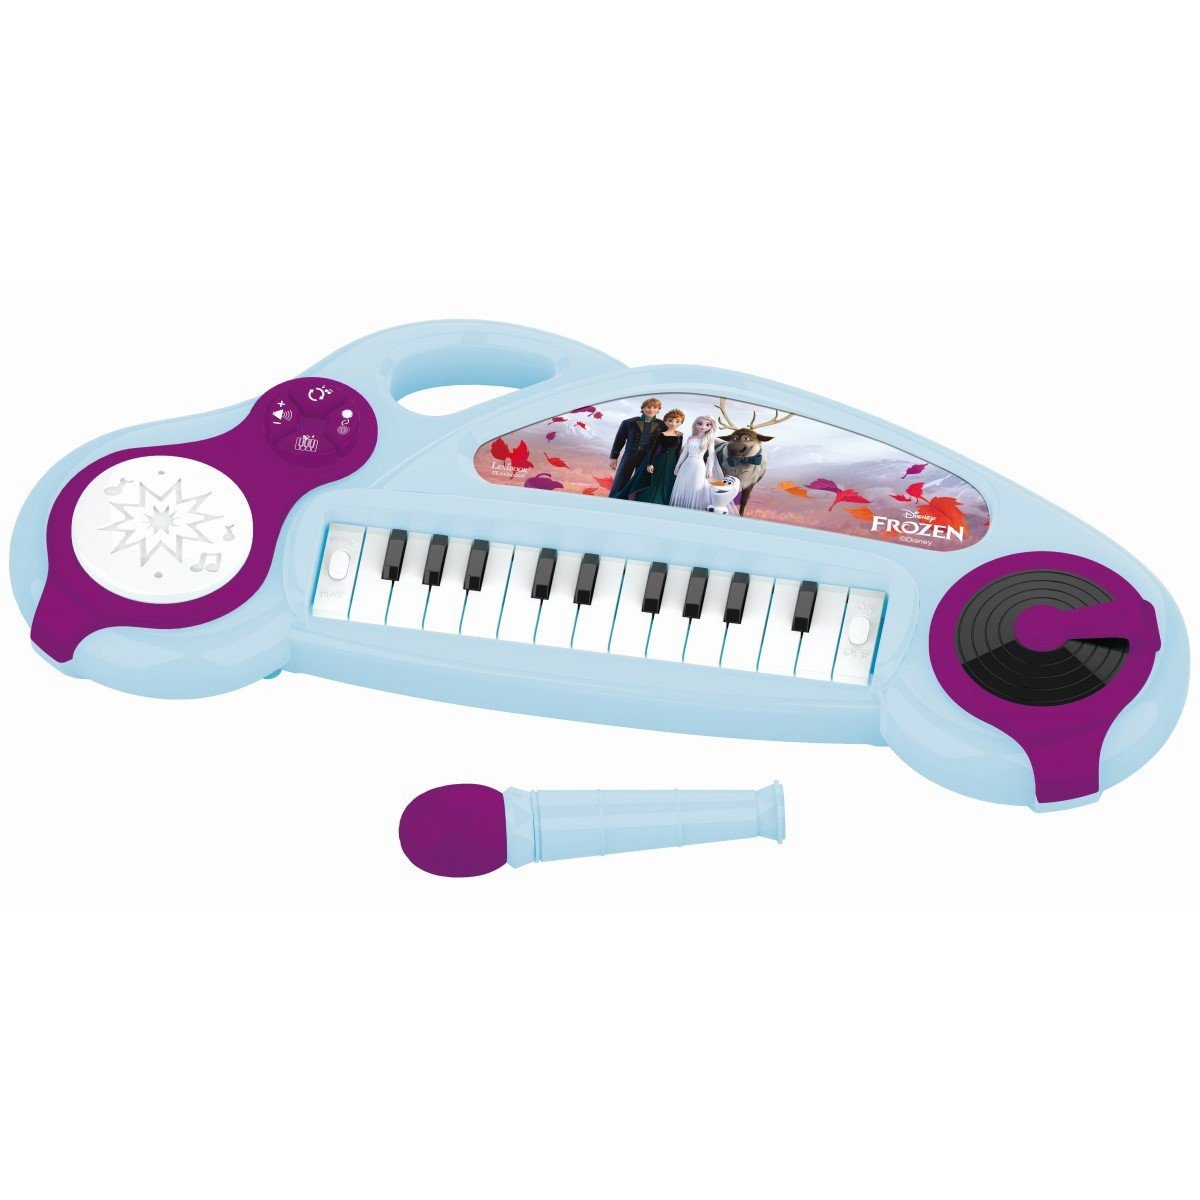 Lexibook® Spielzeug-Musikinstrument Elektronisches Keyboard Drumpad Anna Frozen Elsa Disney